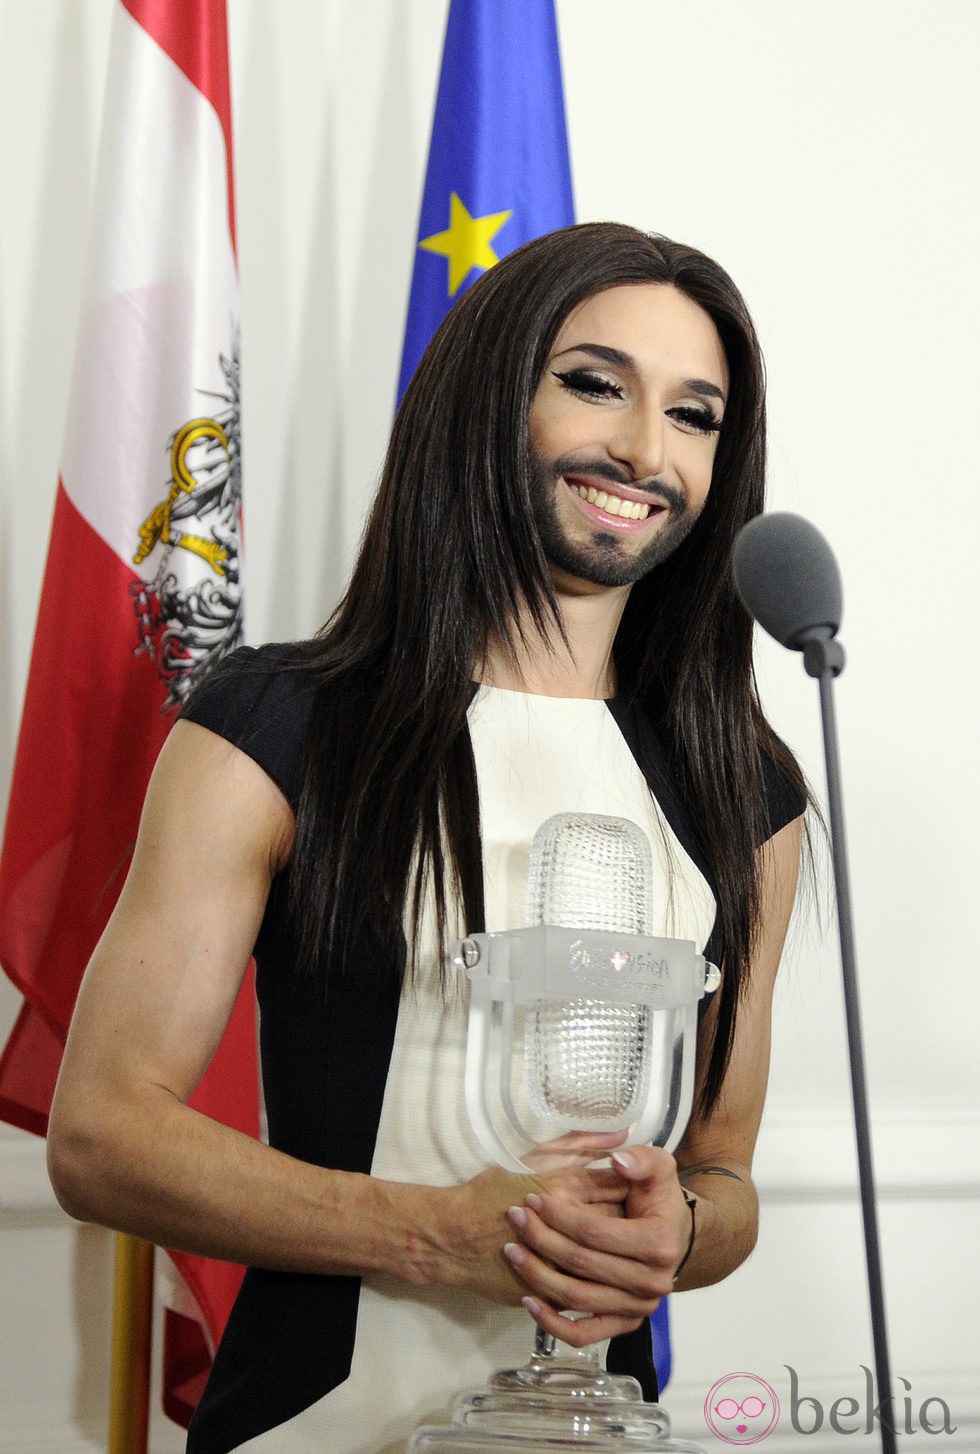 Conchita Wurst en un acto una semana después de ganar Eurovisión 2014